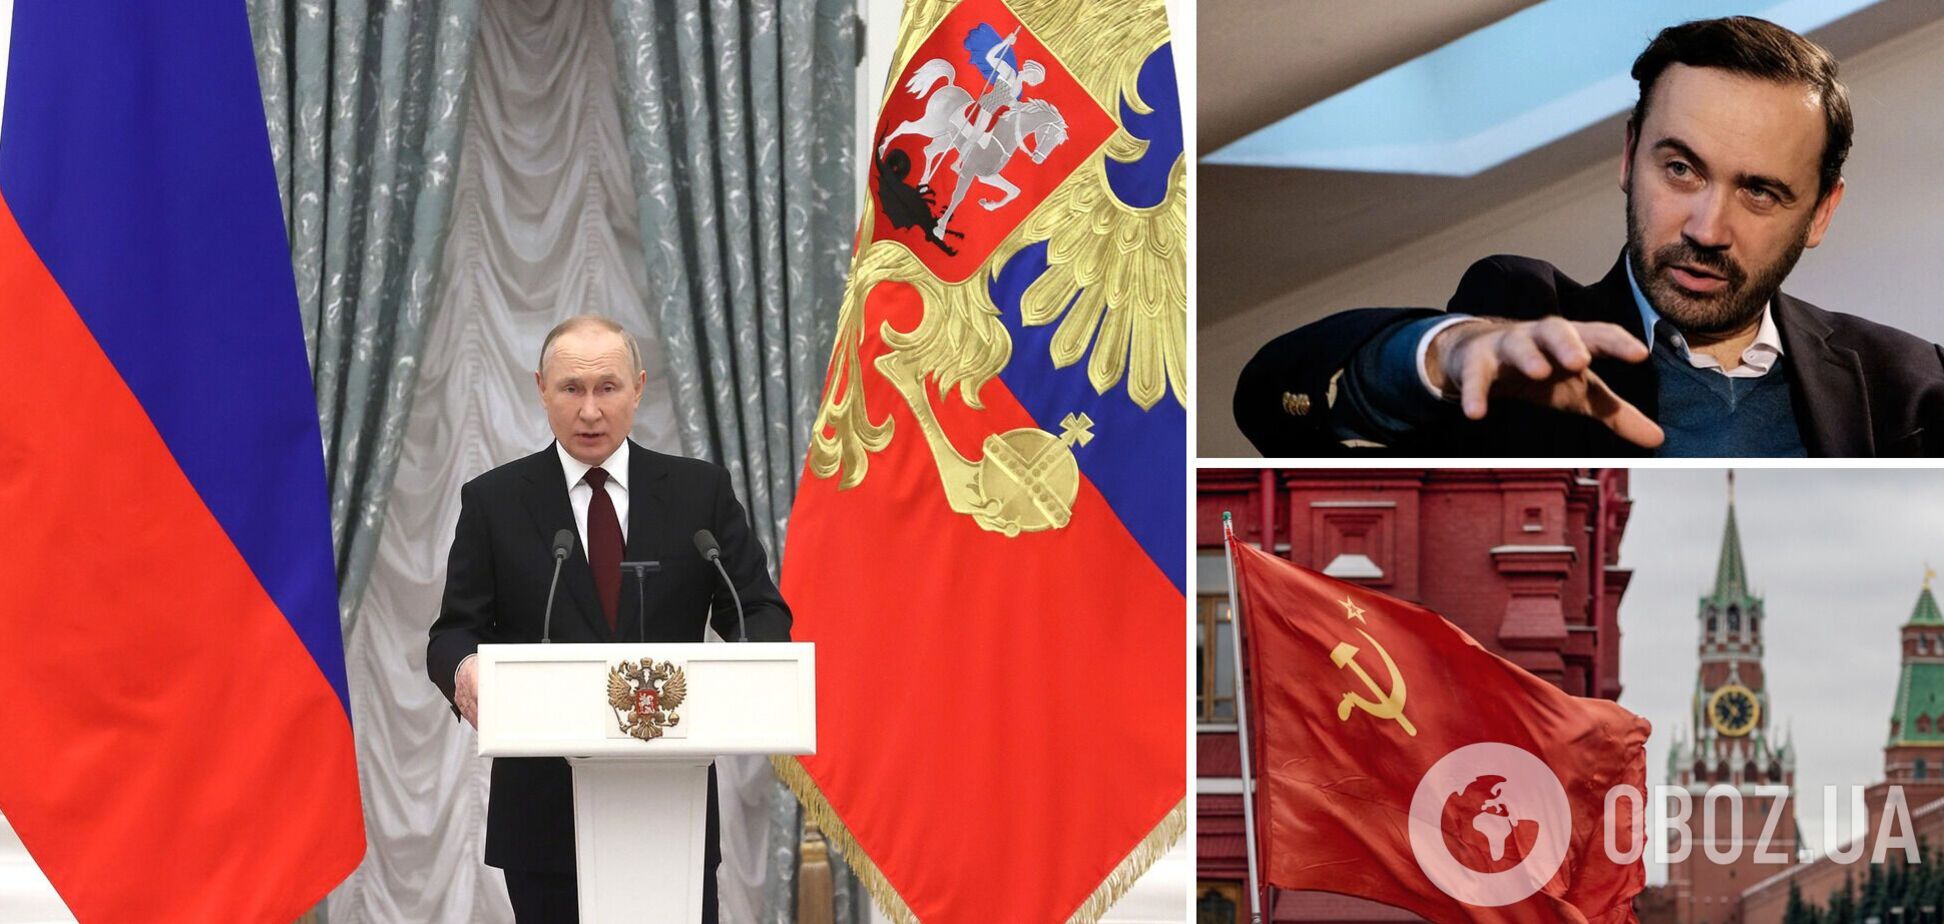 Путин хочет завладеть Украиной полностью, он не отказался от своих имперских планов, заявил Пономарев